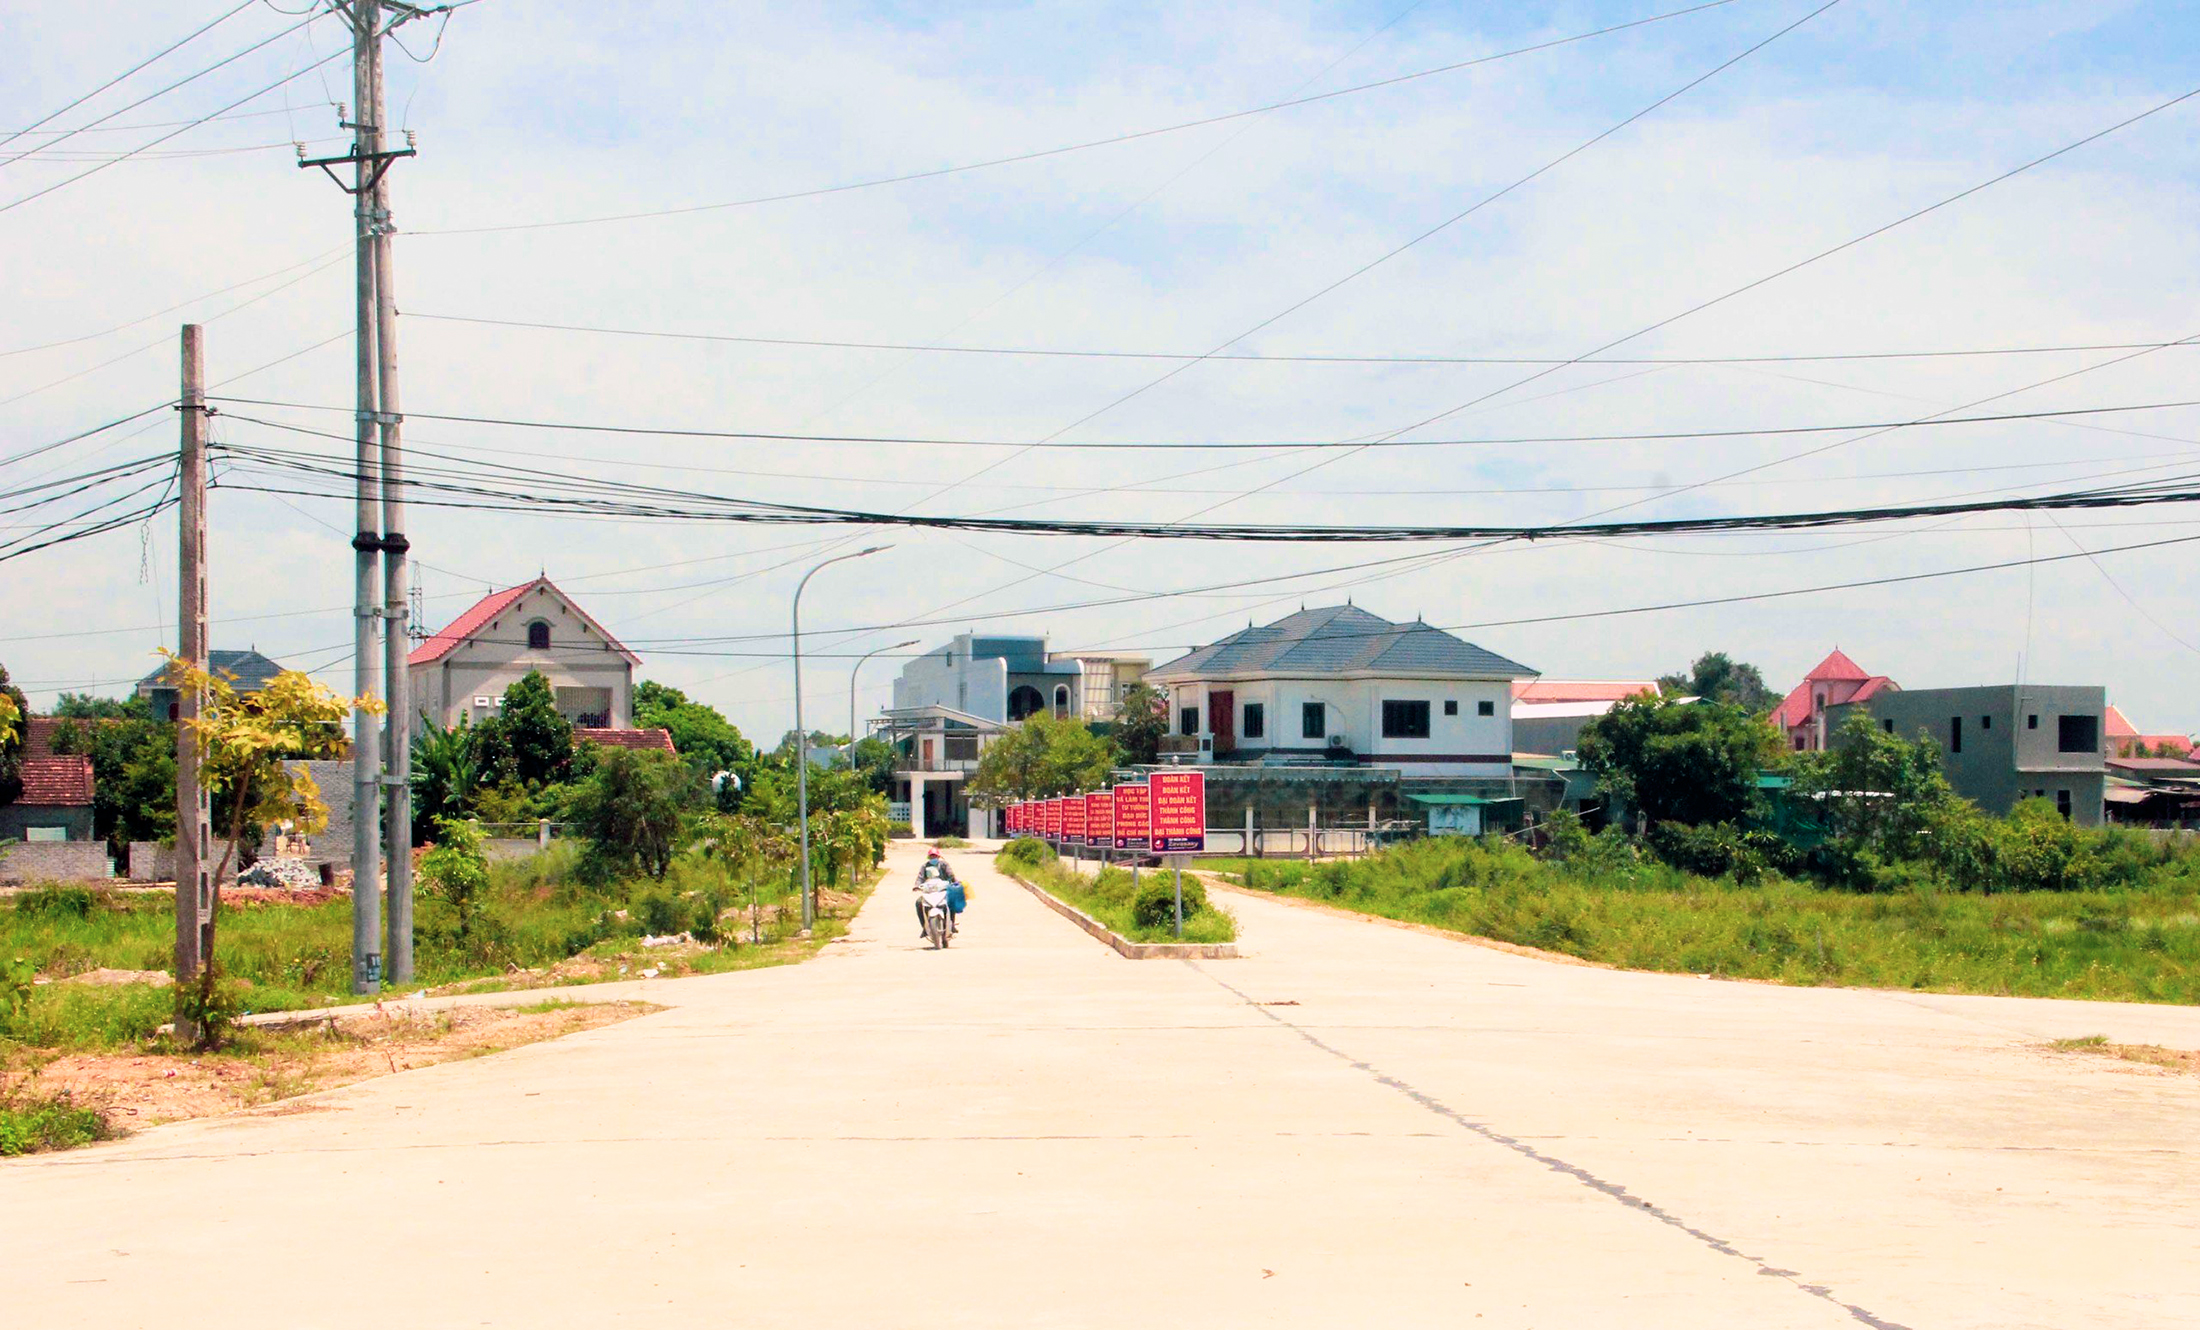 Bê tông hóa giao thông ở xã Bảo Thành (Yên Thành). Ảnh: Thanh Lê